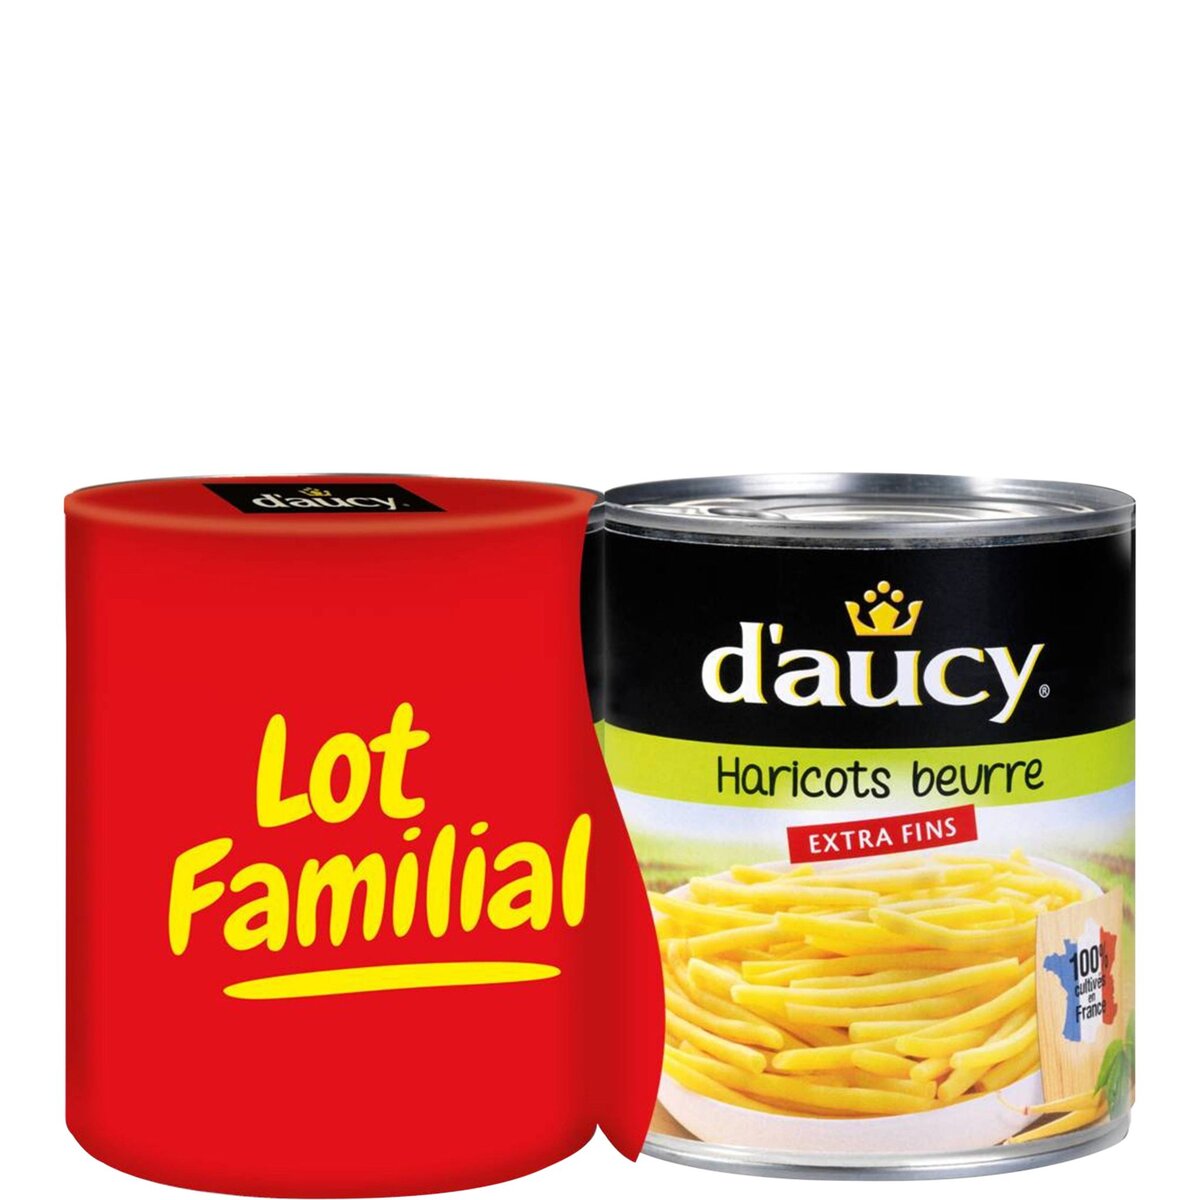 D'AUCY D'aucy haricots beurre extra fins 2x440g lot familial